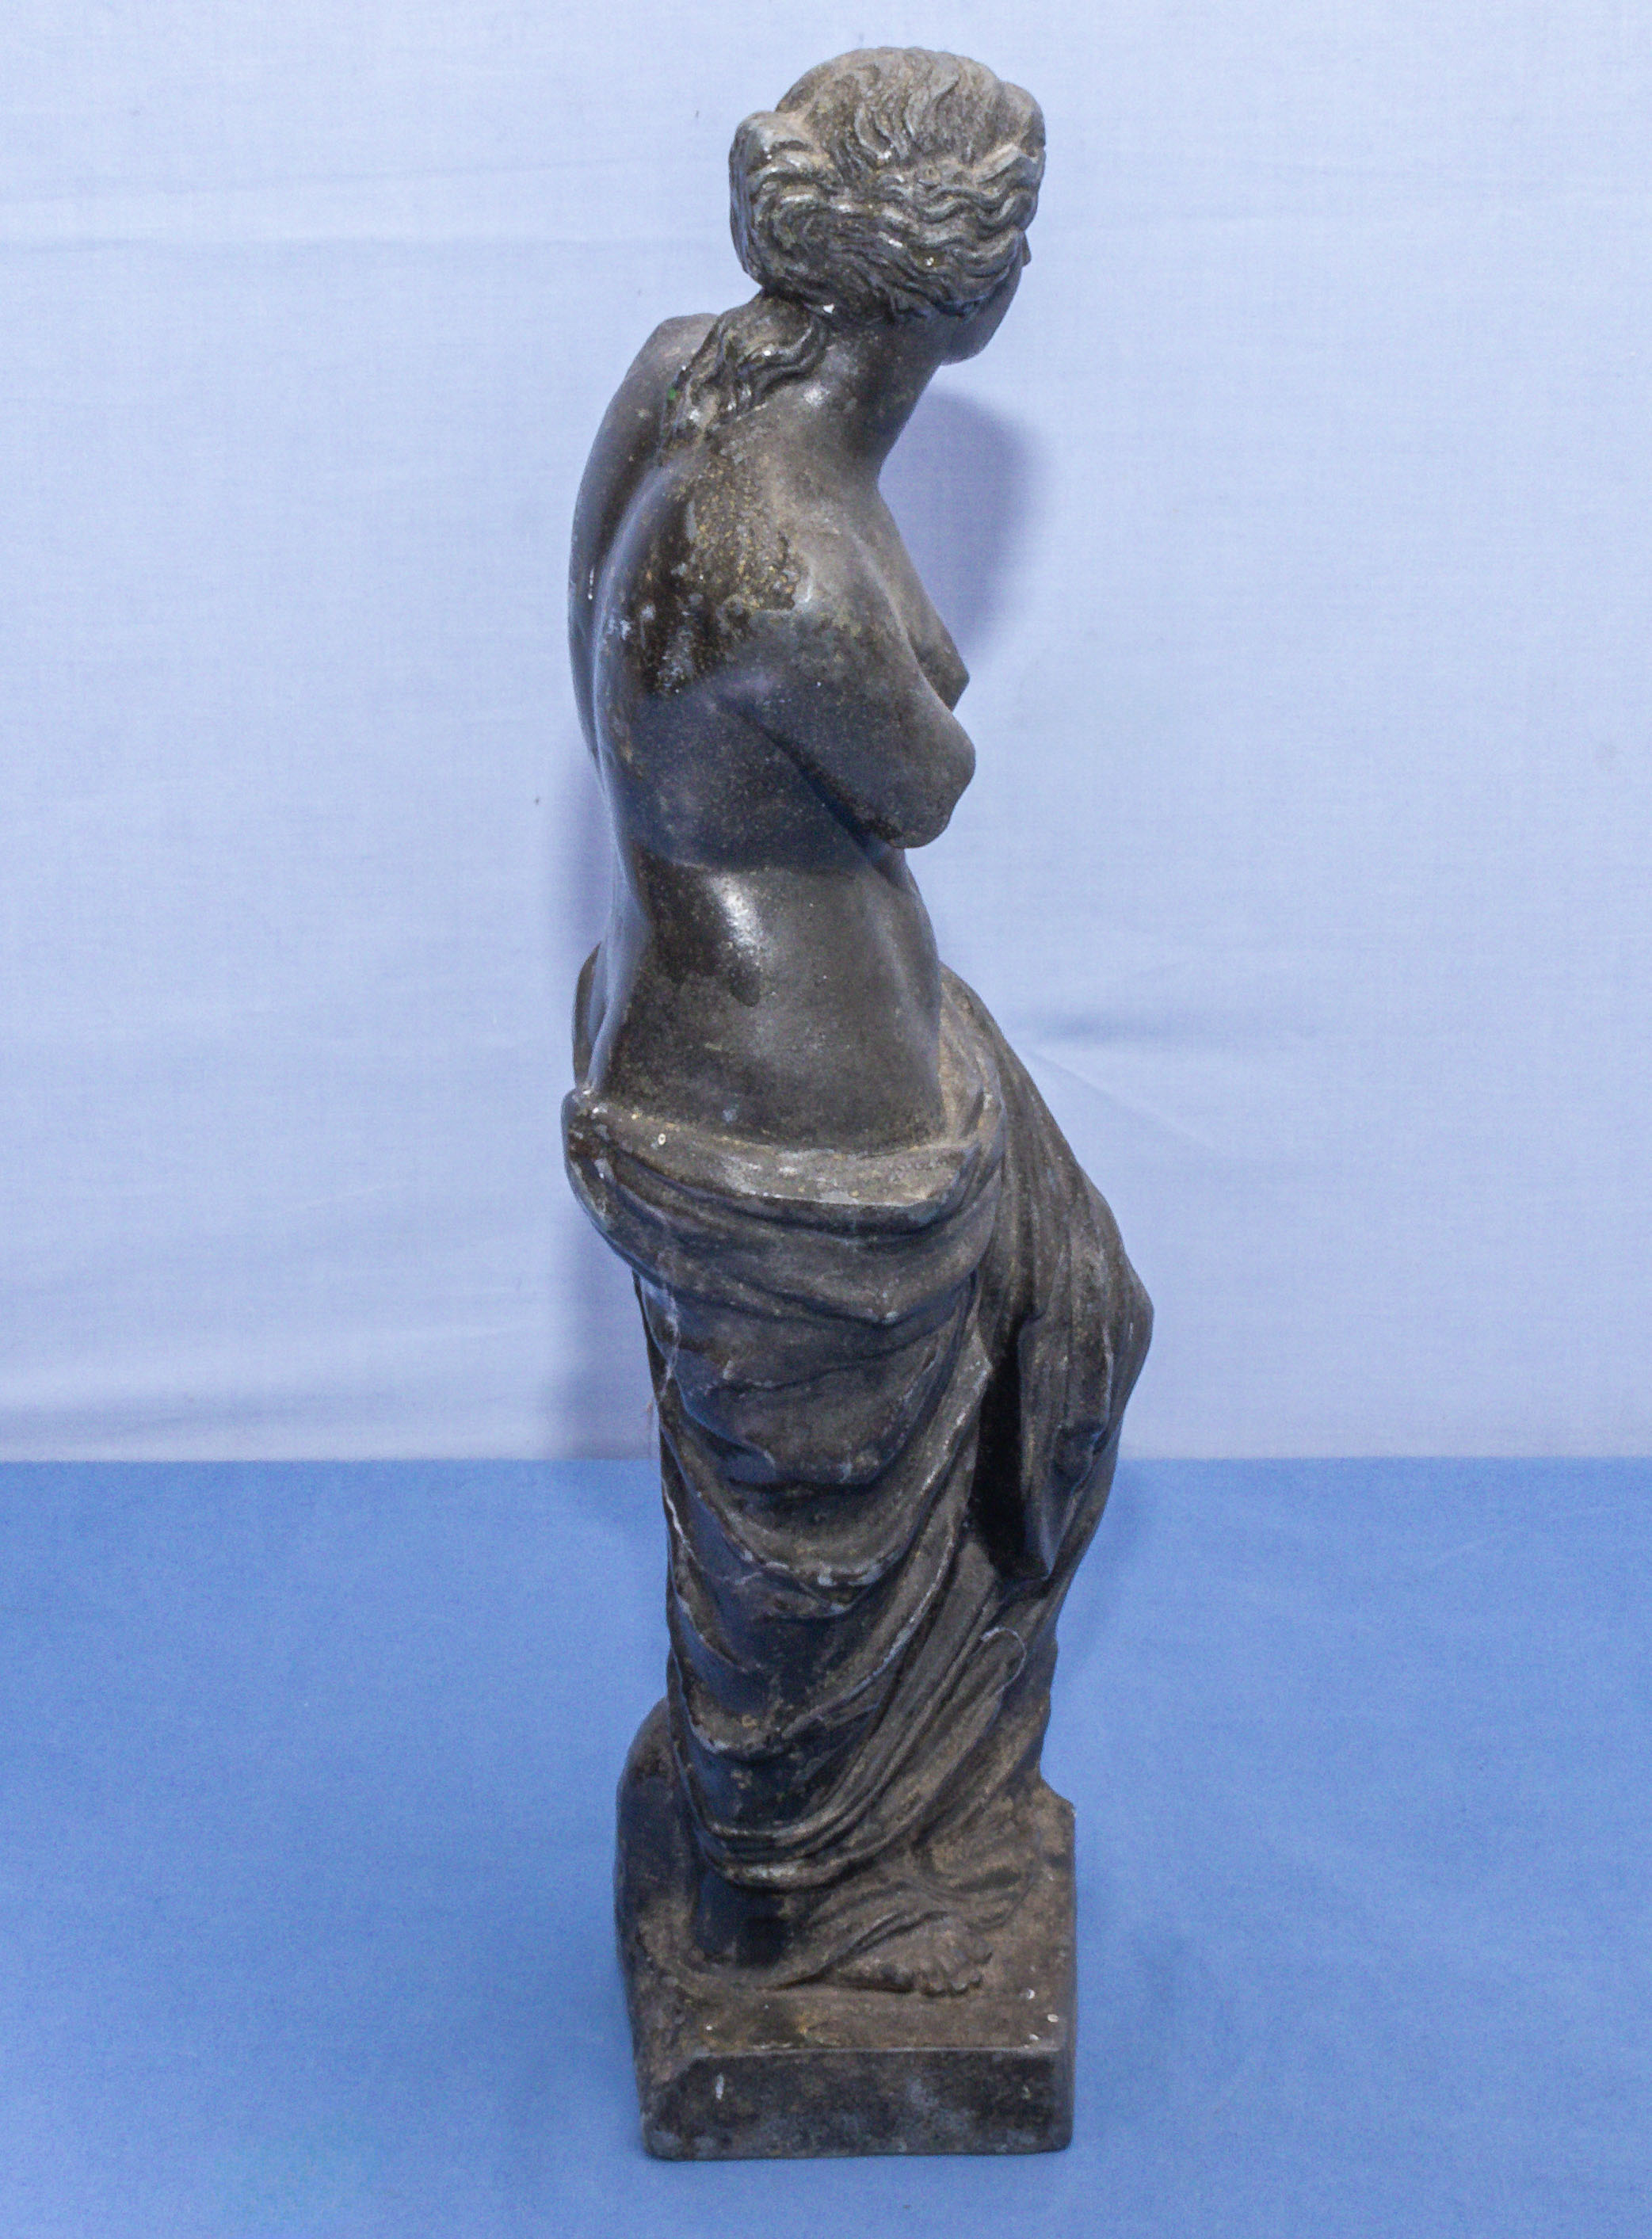 Spelter figure of Venus de Milo 42cm tall - Image 4 of 4